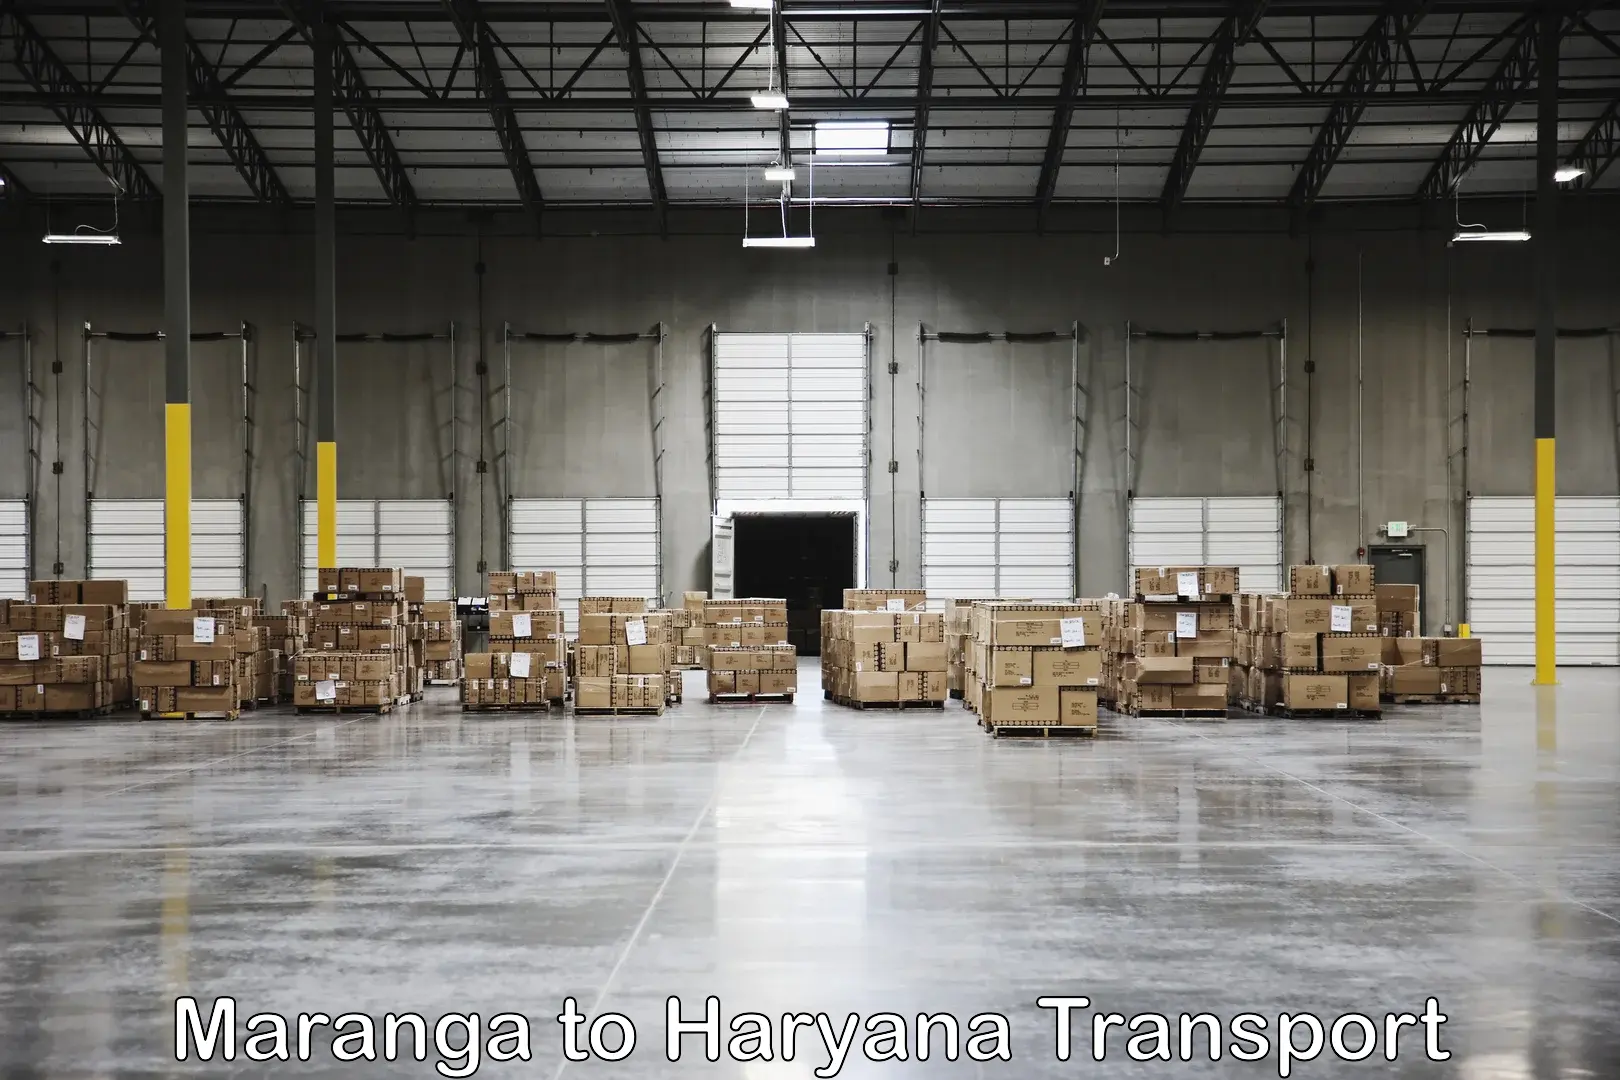 Truck transport companies in India in Maranga to Jhajjar